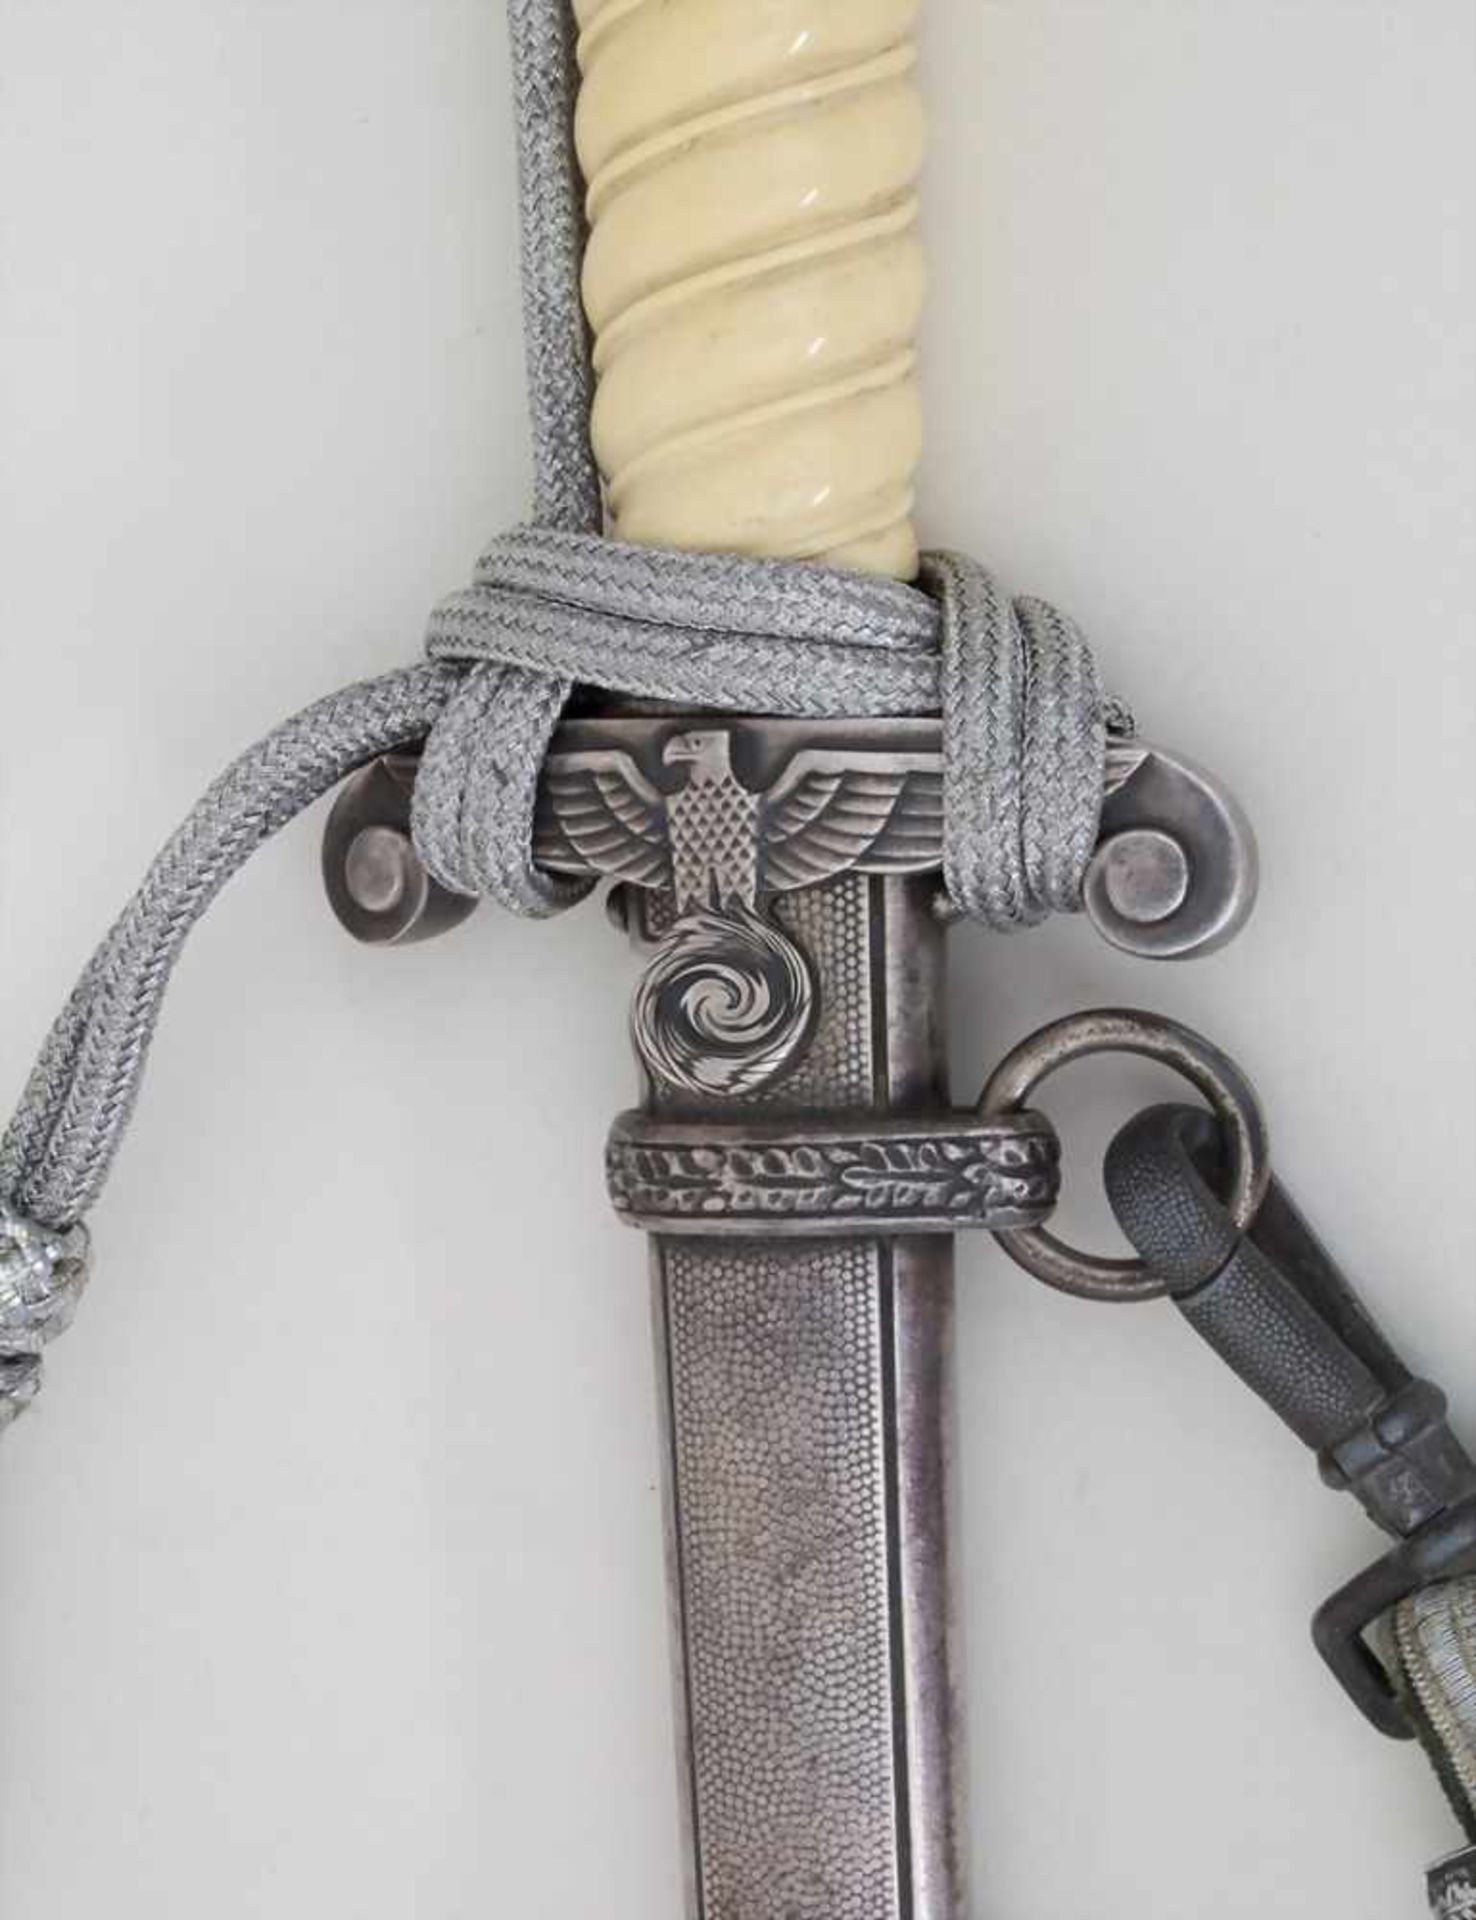 Heeres Offiziersdolch / An officers dagger, 3. ReichHeeres Offiziersdolch mit Portepee und Gehänge, - Bild 2 aus 3